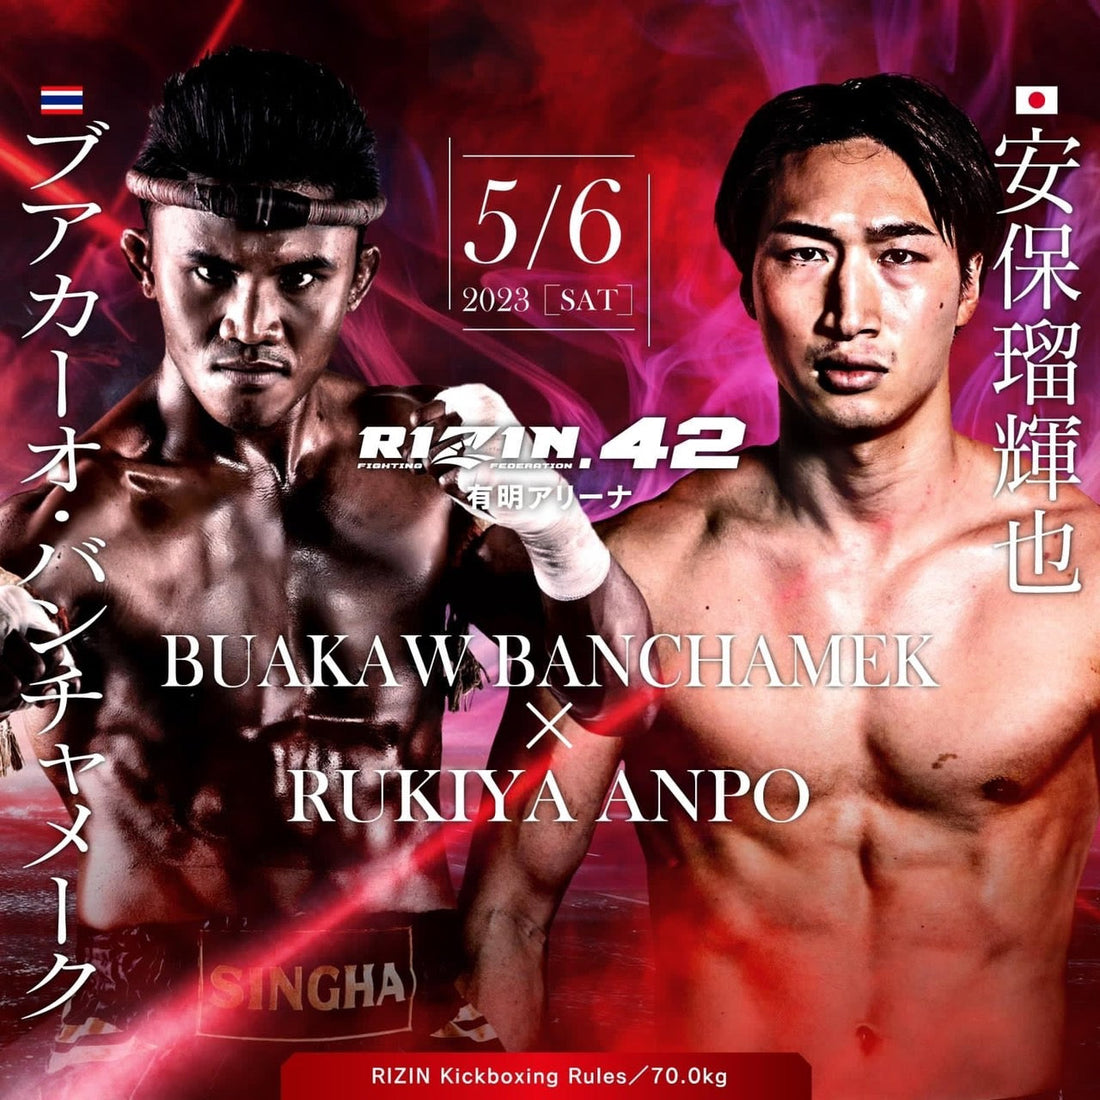 Buakaw Makes His Return to Japan To Face Rukiya Anpo at Rizin 42